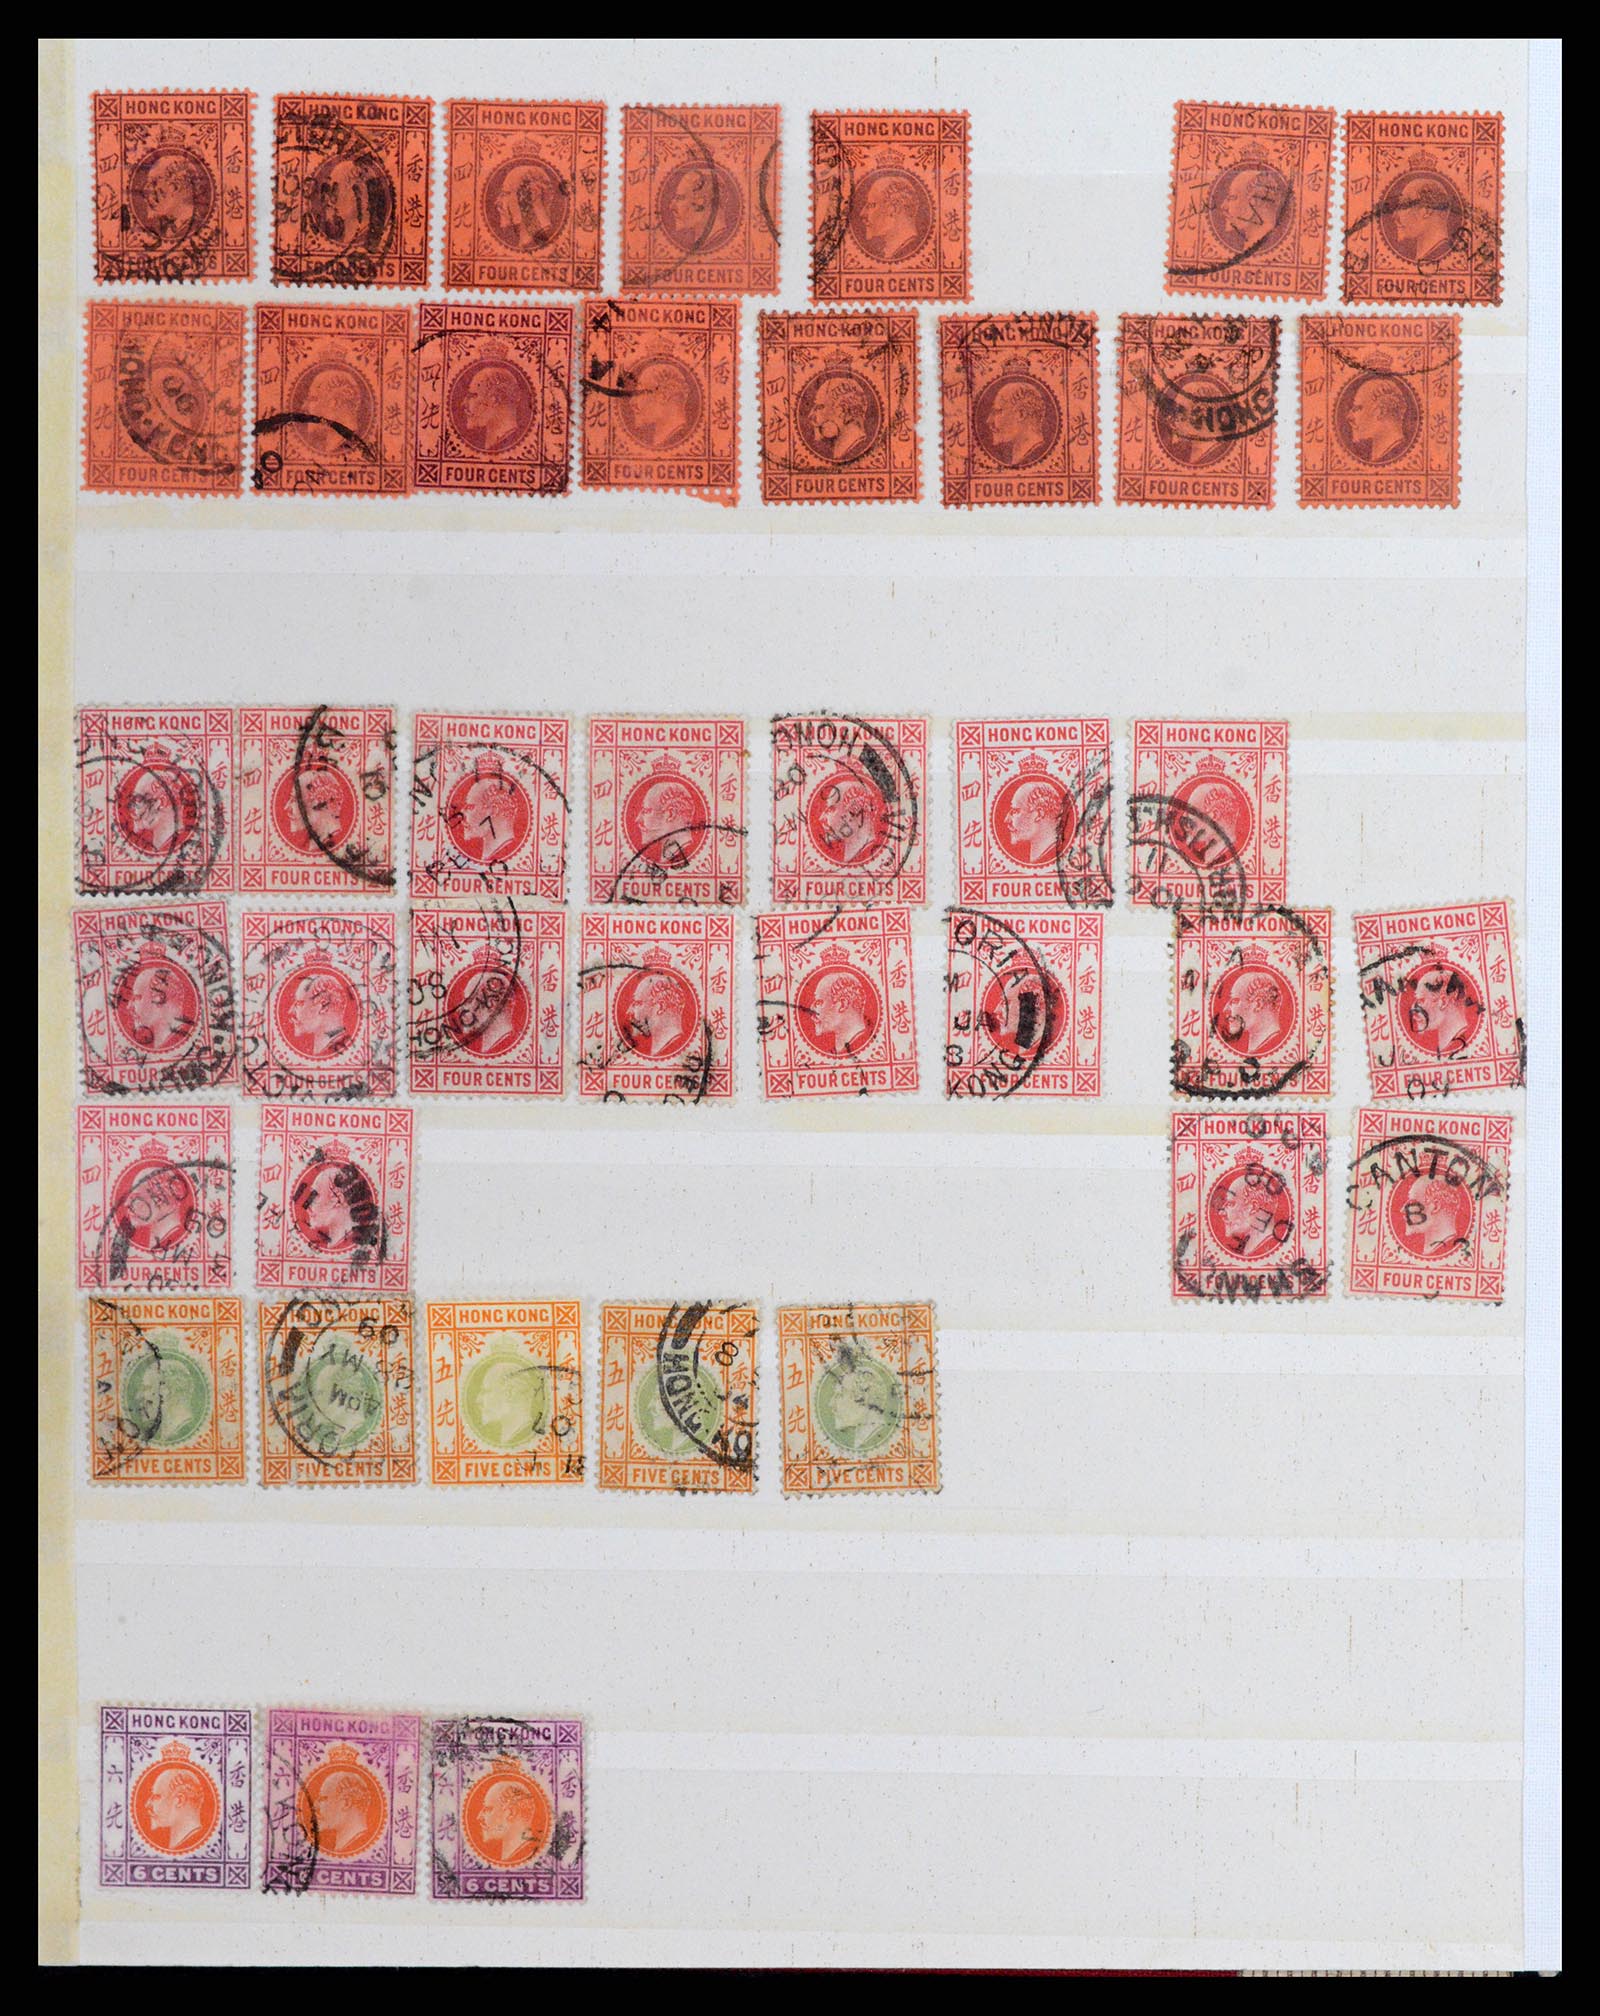 37358 006 - Stamp collection 37358 Hong Kong 1861-1997.